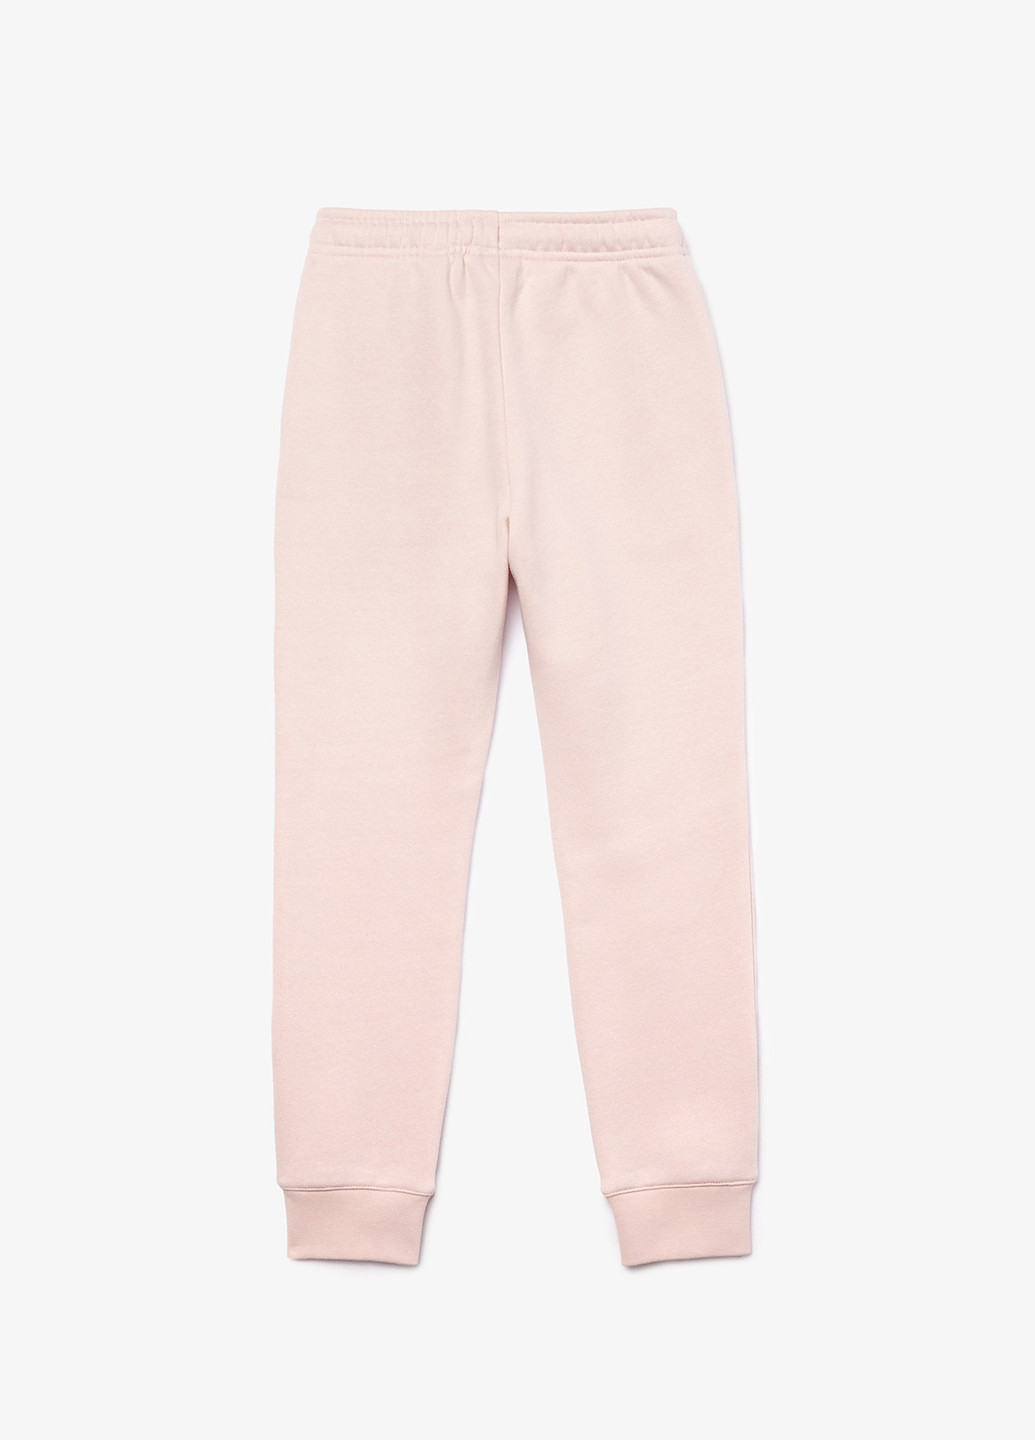 Светло-розовые спортивные демисезонные джоггеры брюки Lacoste